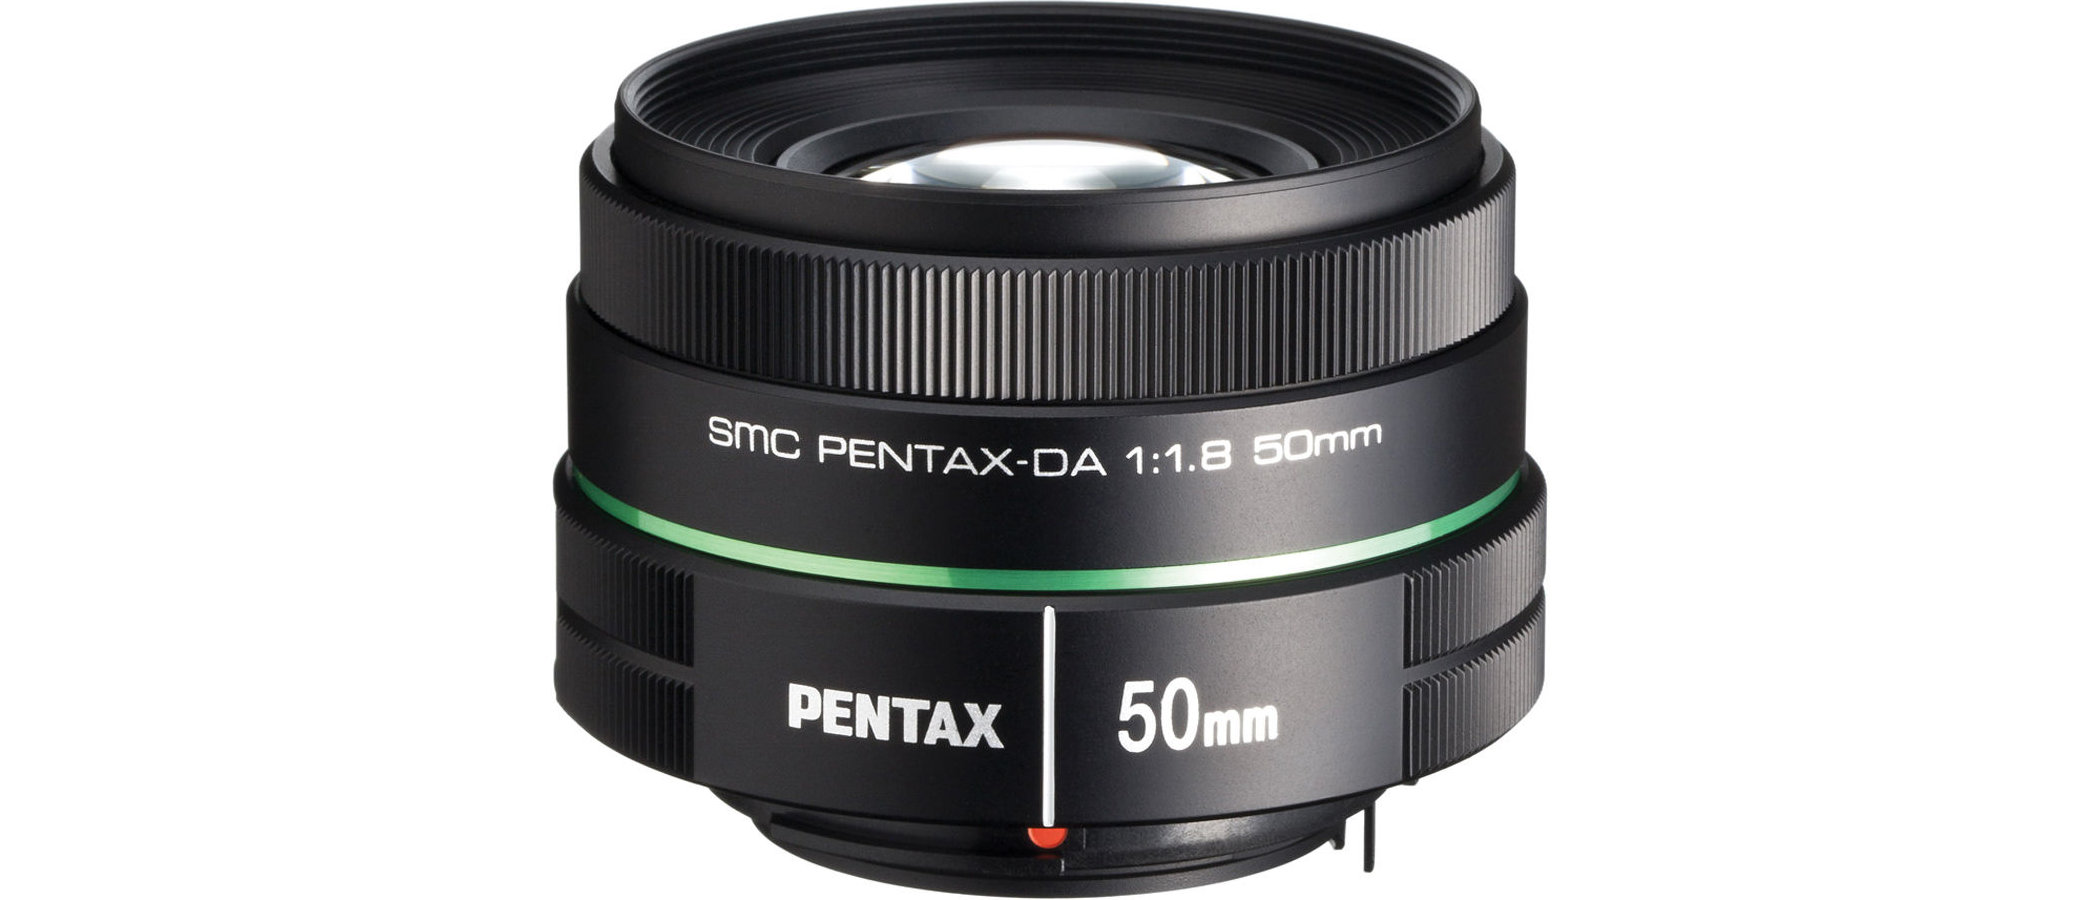 Pentax smc DA 50mm f/1.8 review | Digital Camera World